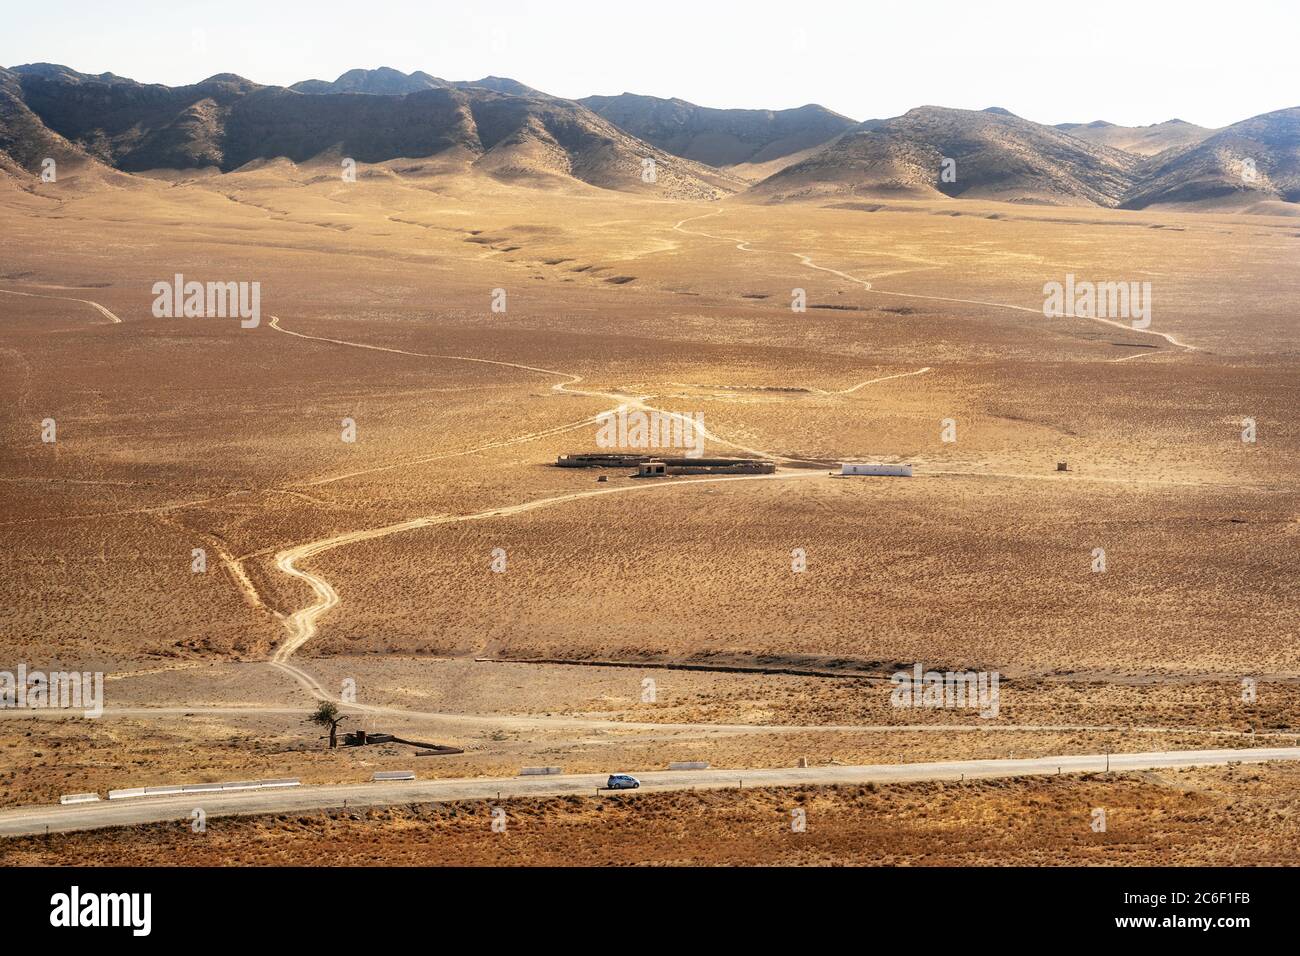 Ferme en pierre avec des maisons au milieu du sable. Voyage en voiture dans le désert. Ouzbékistan Banque D'Images